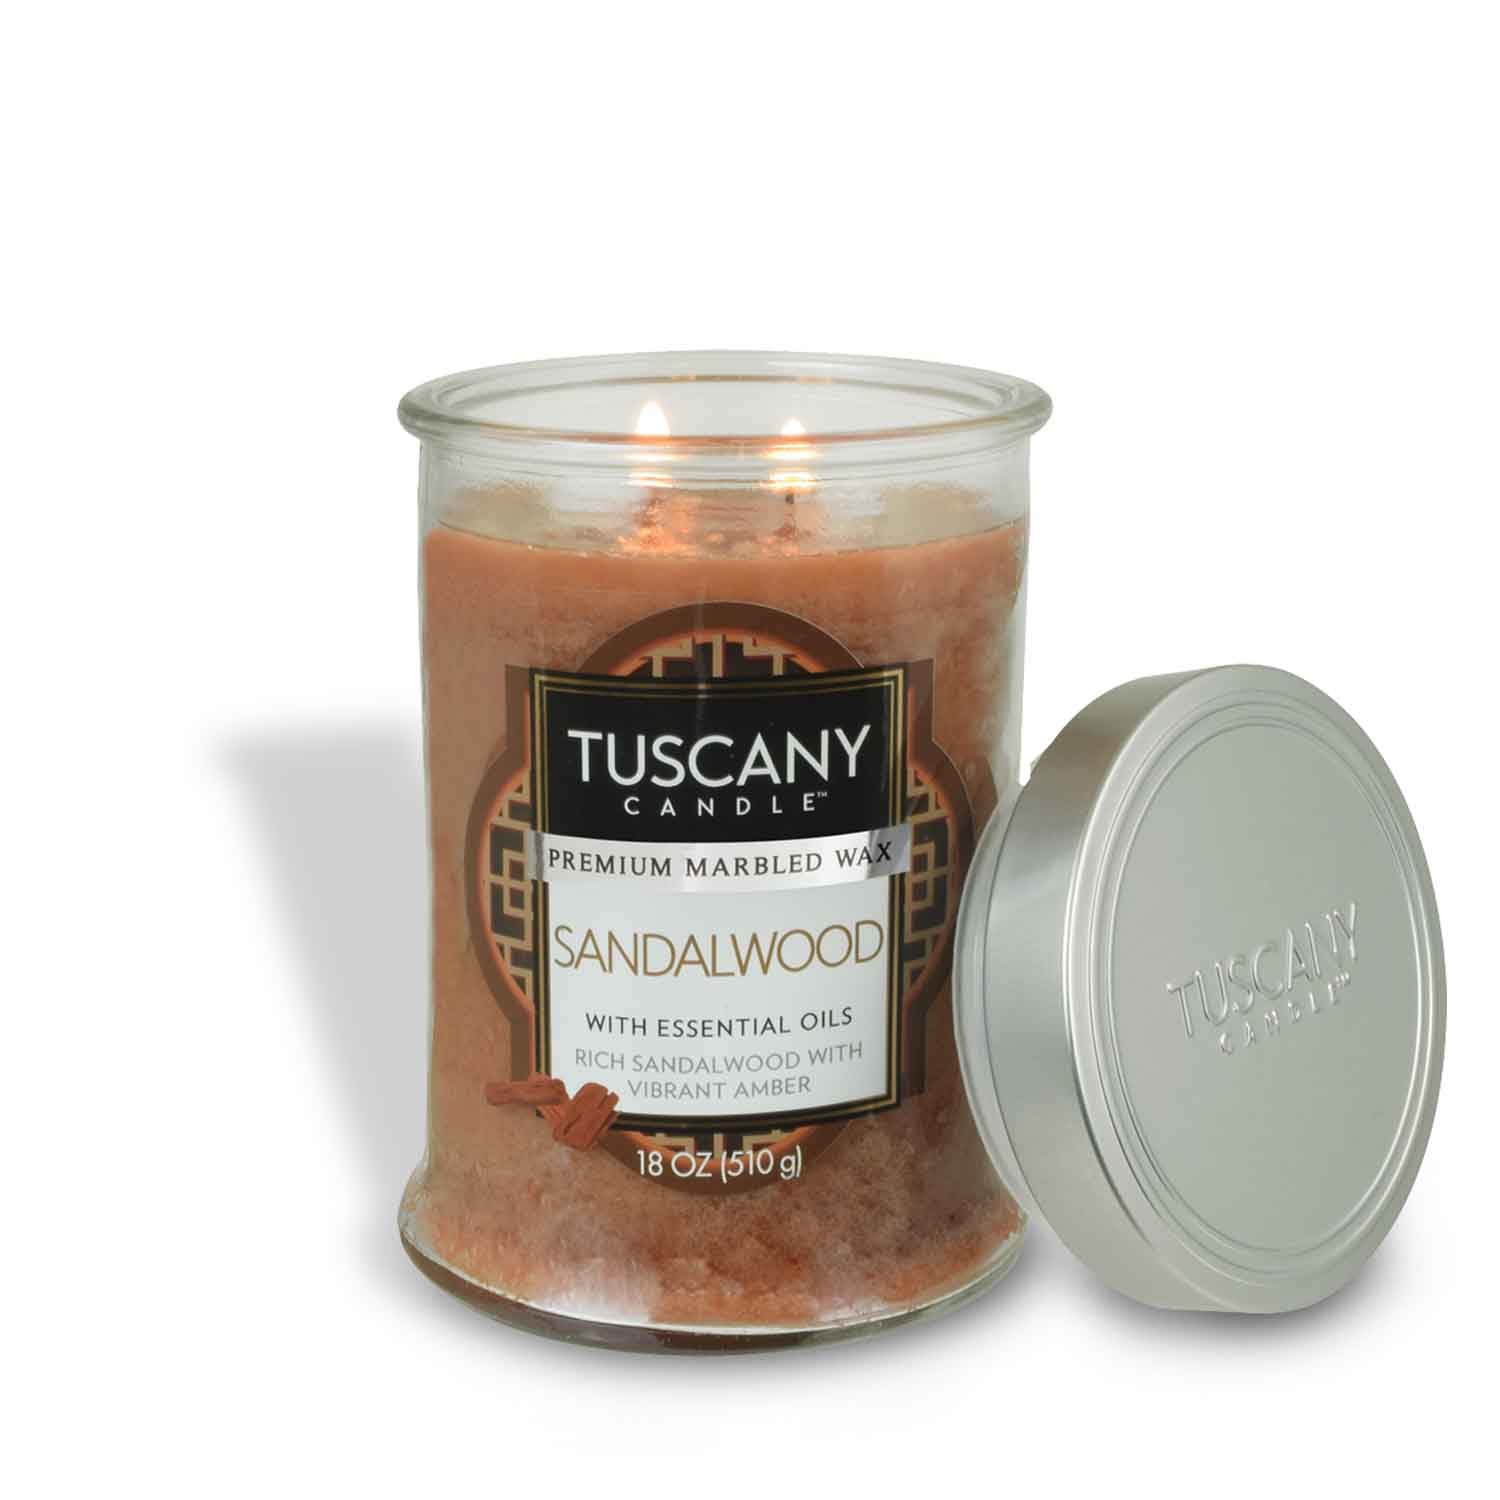 Tuscany Candle® EVD Sandalwood Long-Lasting Scented Jar Candle (18 oz)